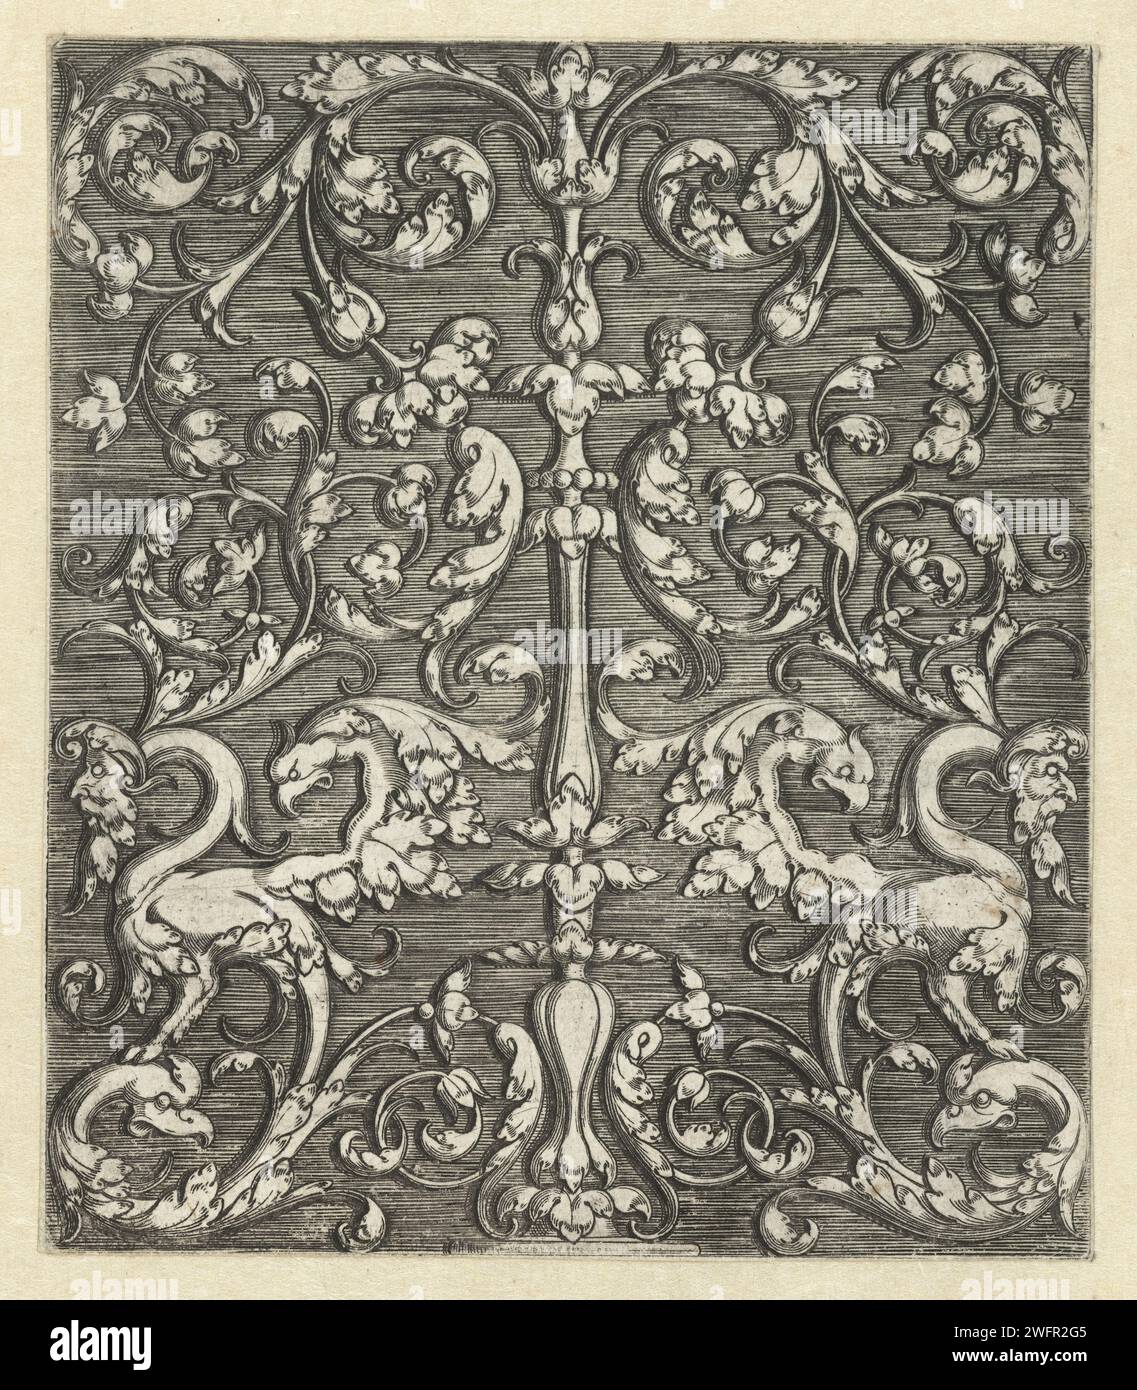 Ornament mit zwei Fantasy-Tieren und Kerzenleuchter, 1522 - 1530 Druck Niederländer Papier Gravur Ornament  hybride Wesen; Mensch und Tier Formen gemischt. Ornament  Kandelaber Stockfoto